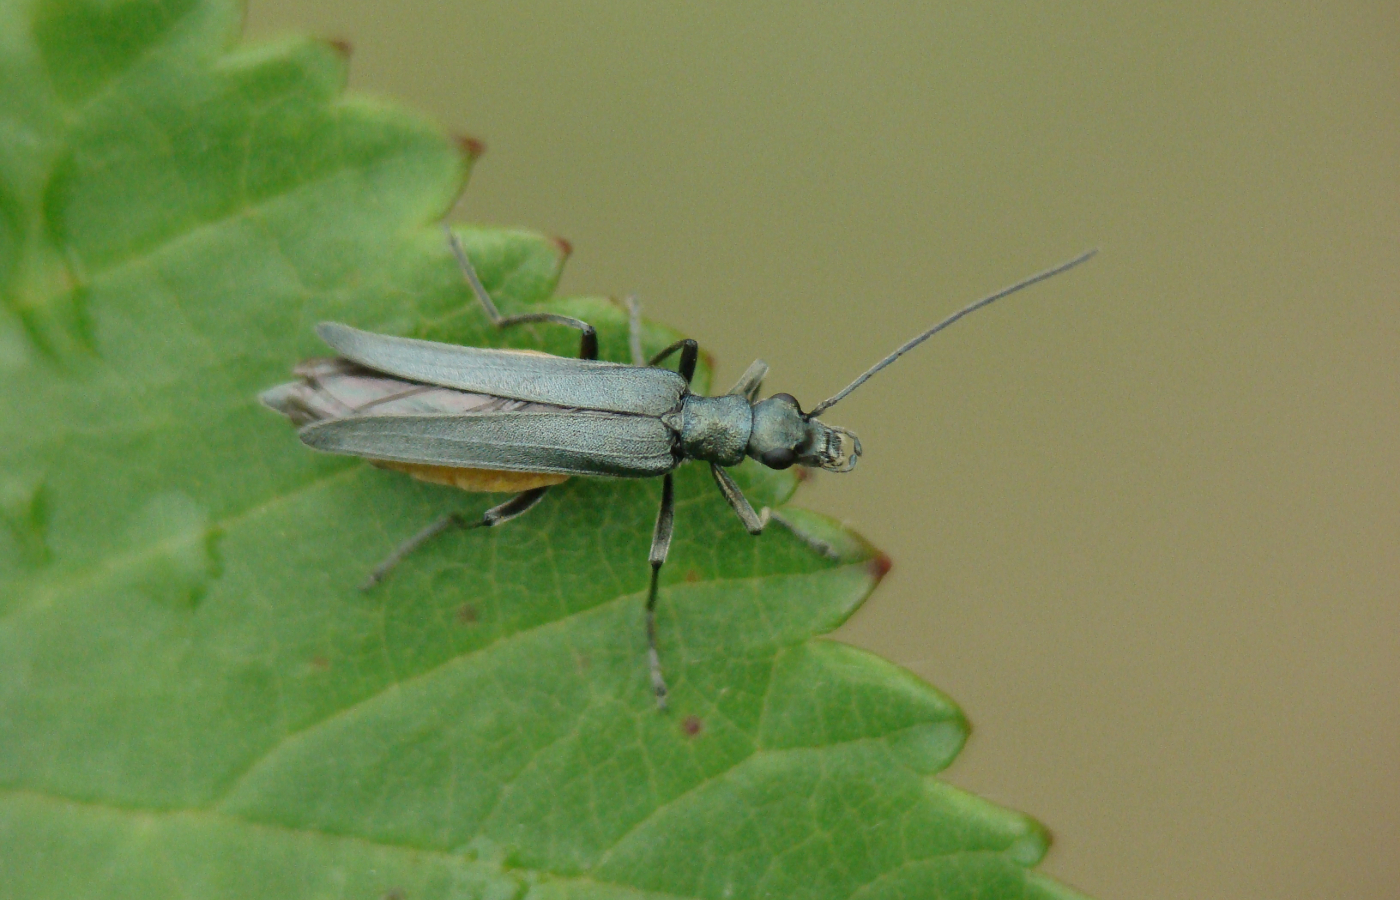 A shiny green beetle named Oedemera lurida